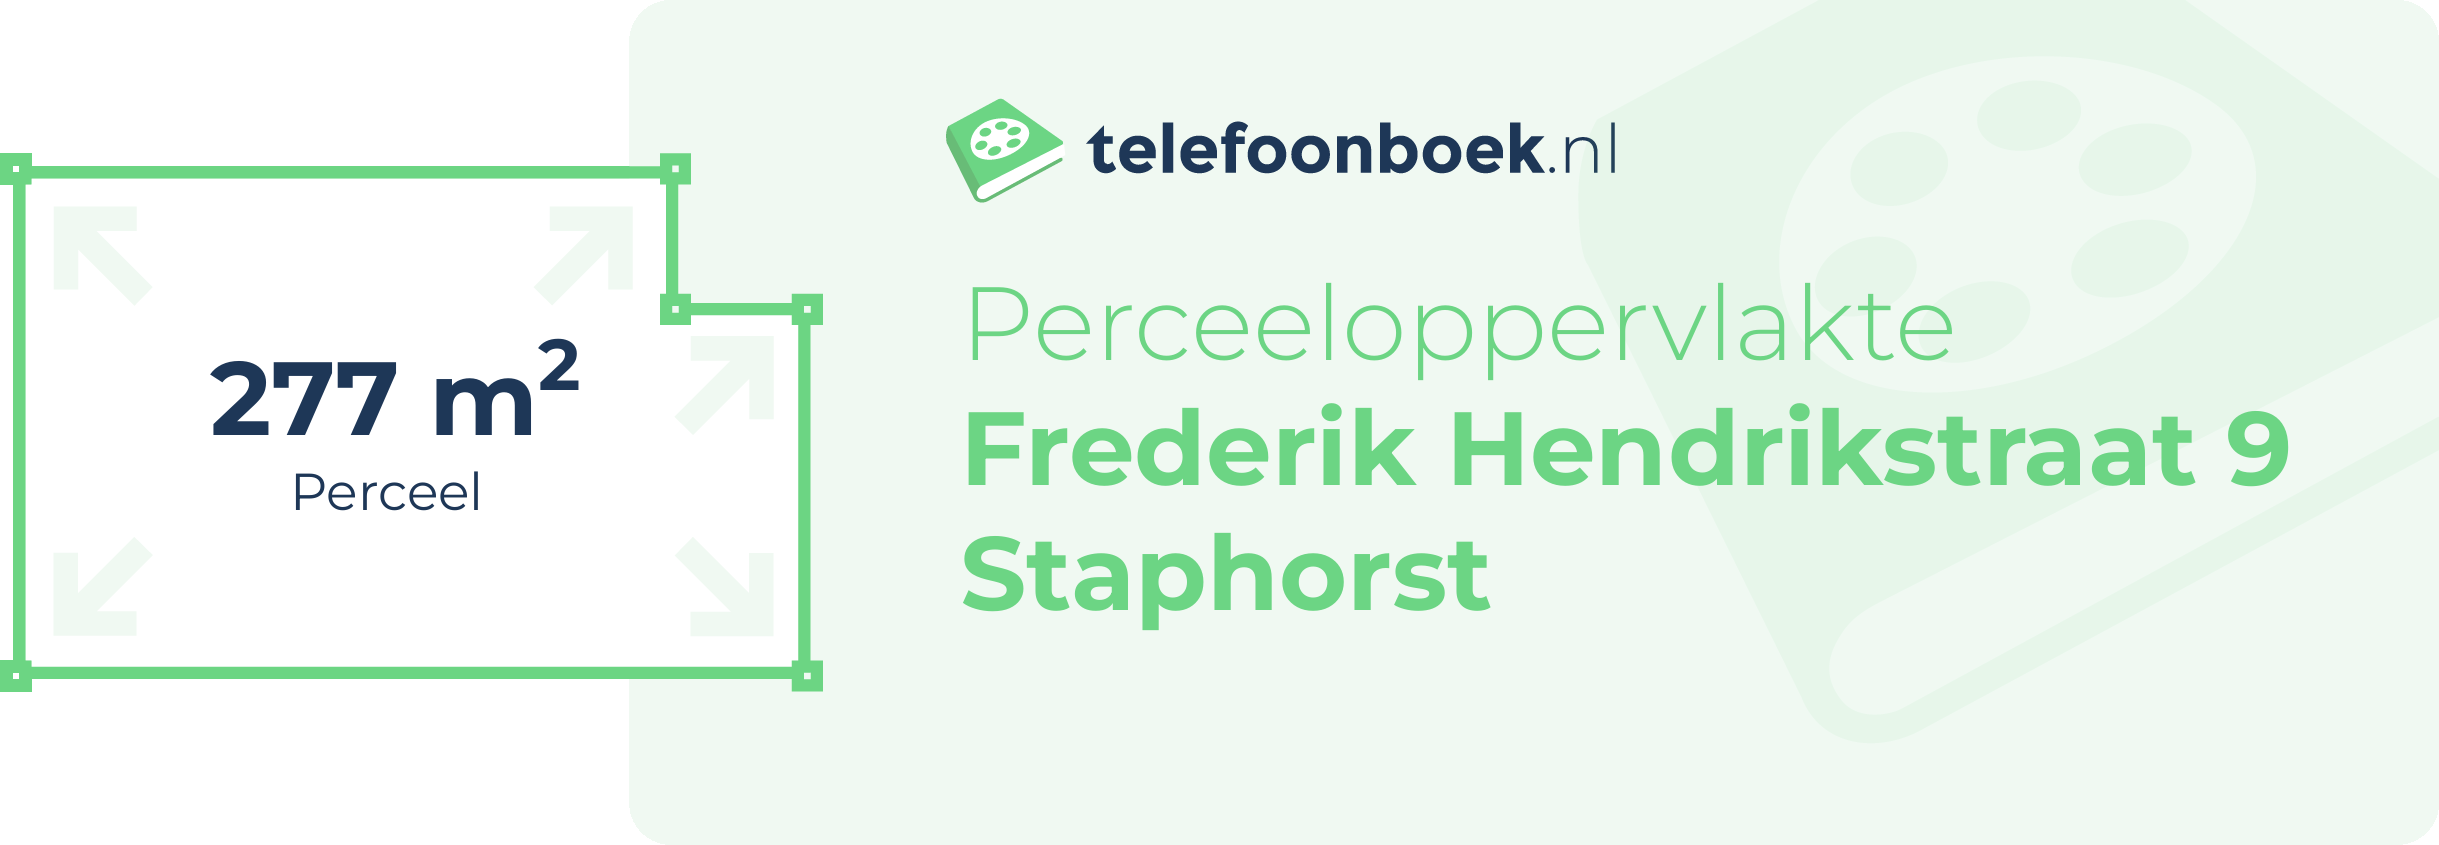 Perceeloppervlakte Frederik Hendrikstraat 9 Staphorst